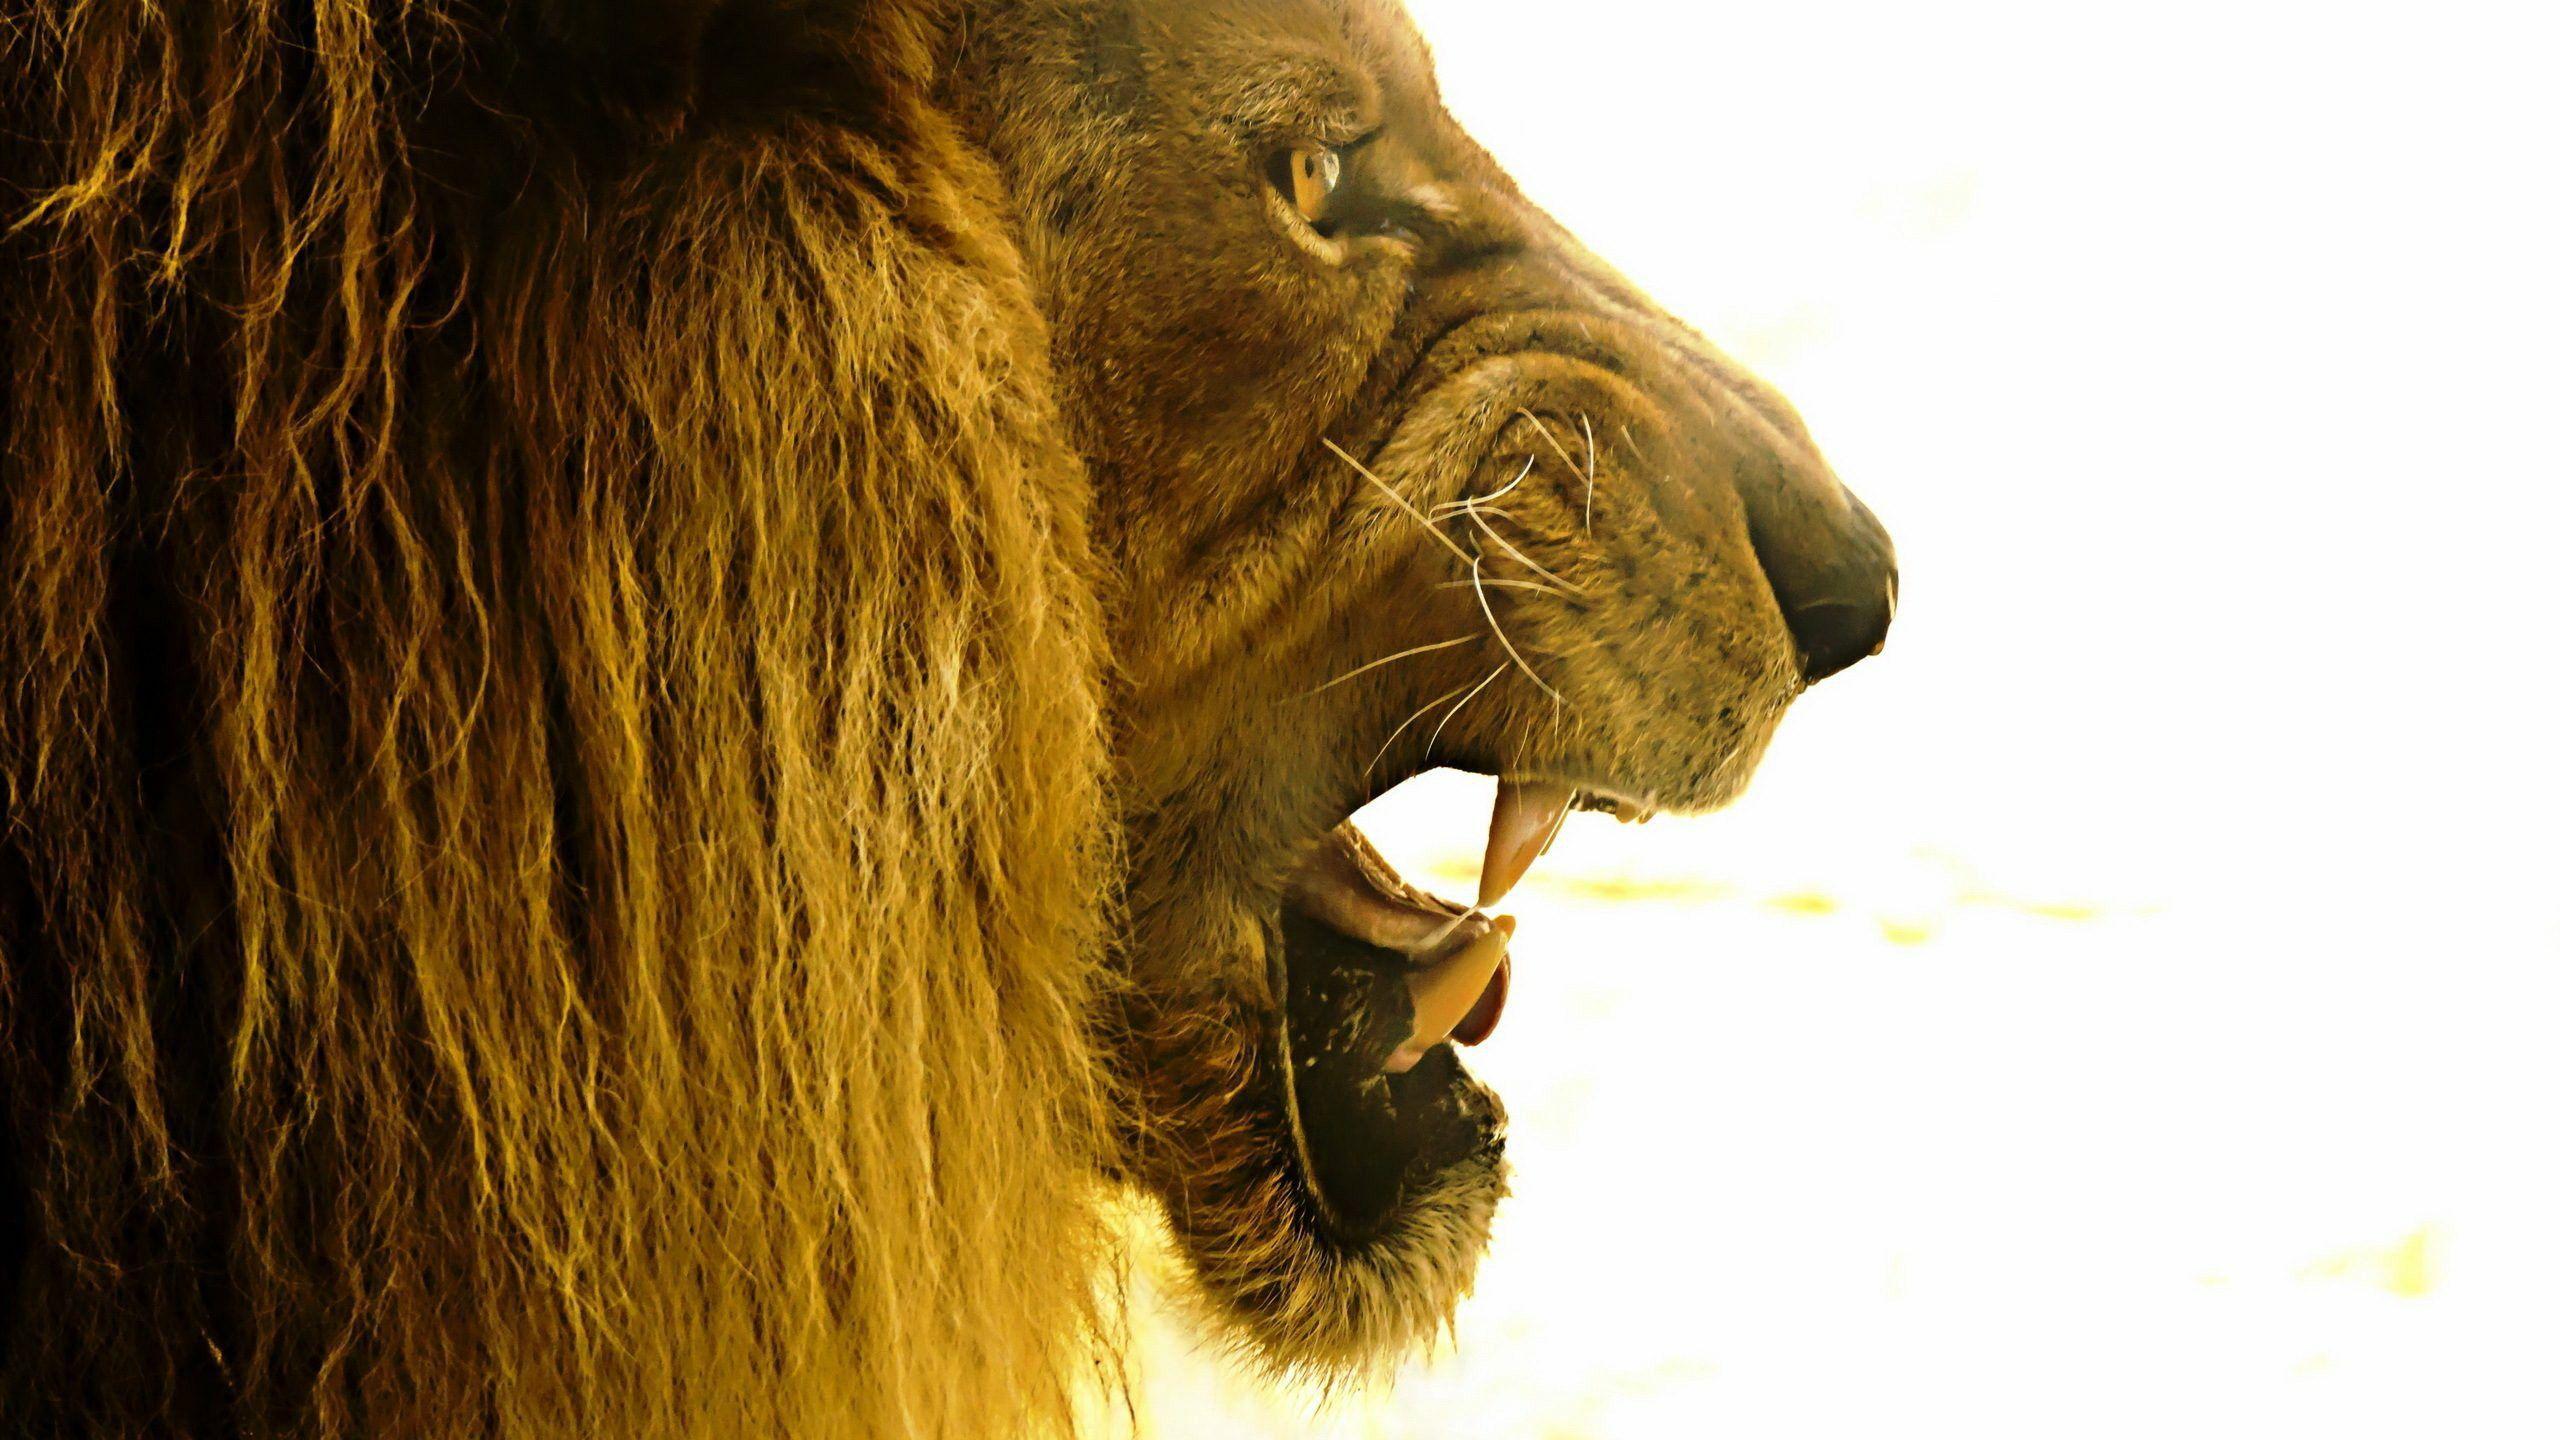 Lion Roar Image